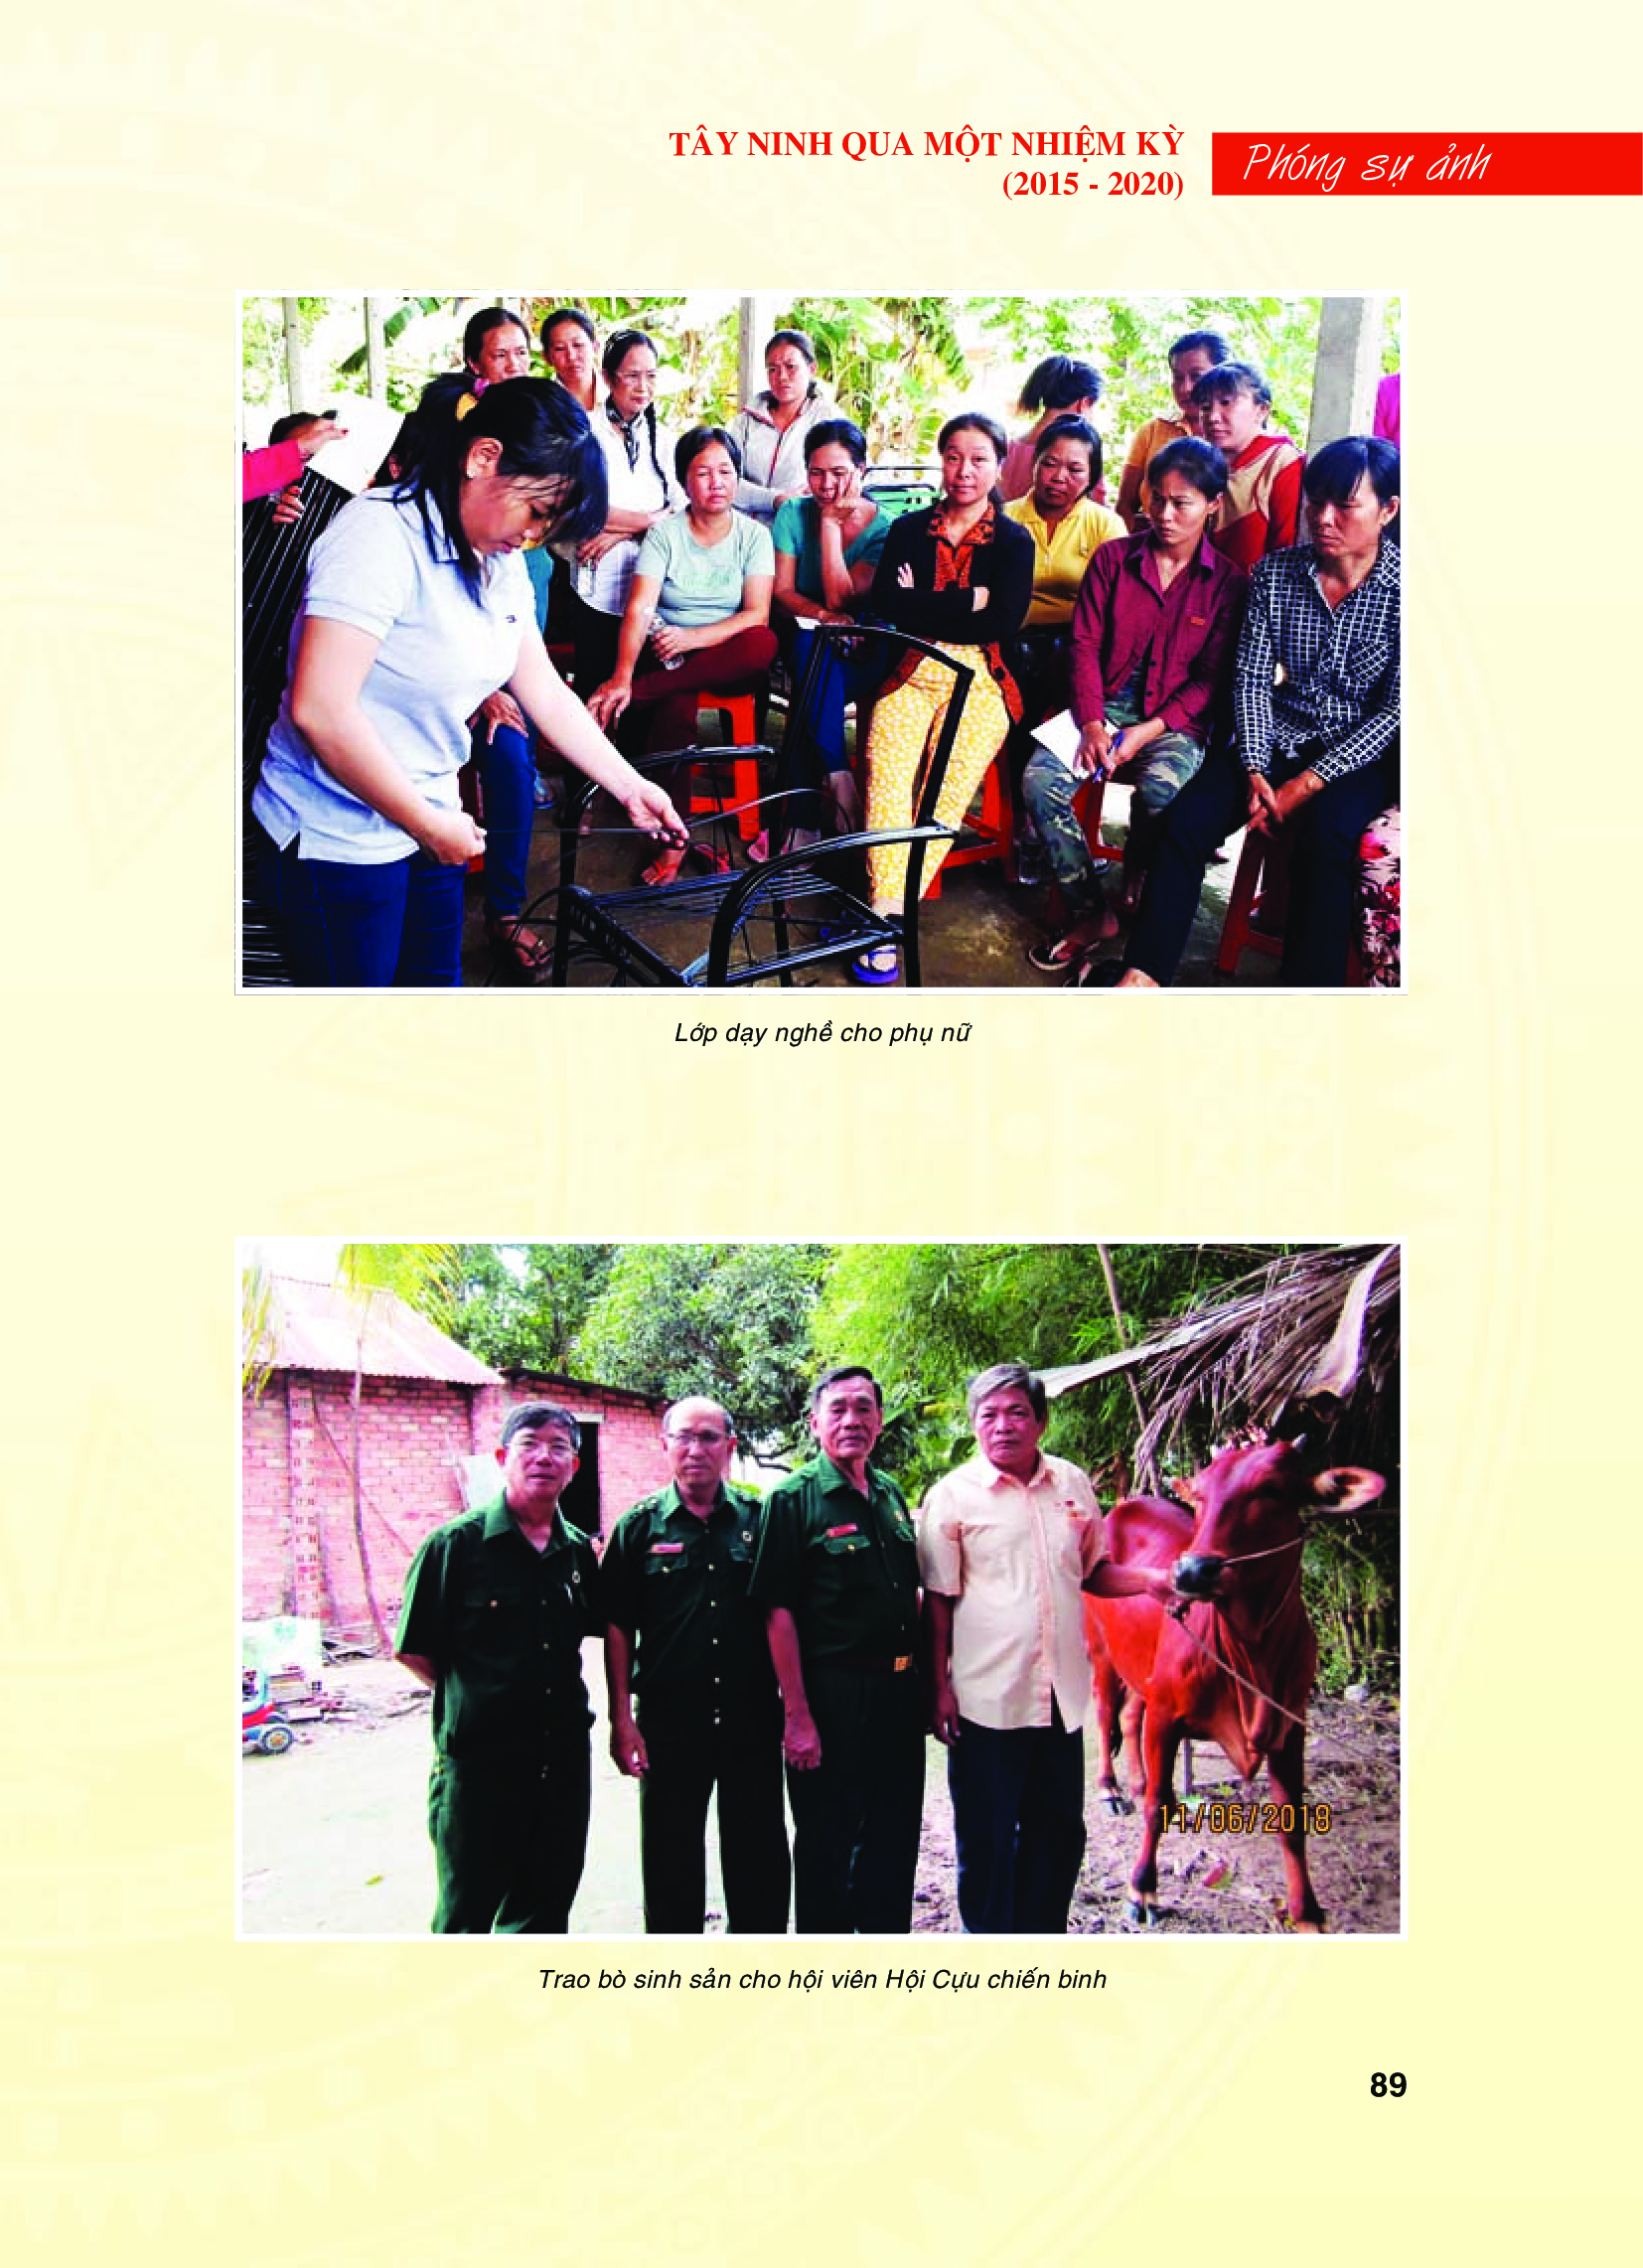 Tây Ninh qua một nhiệm kỳ (2015 - 2020): Thành tựu về Văn hoá - Xã hội